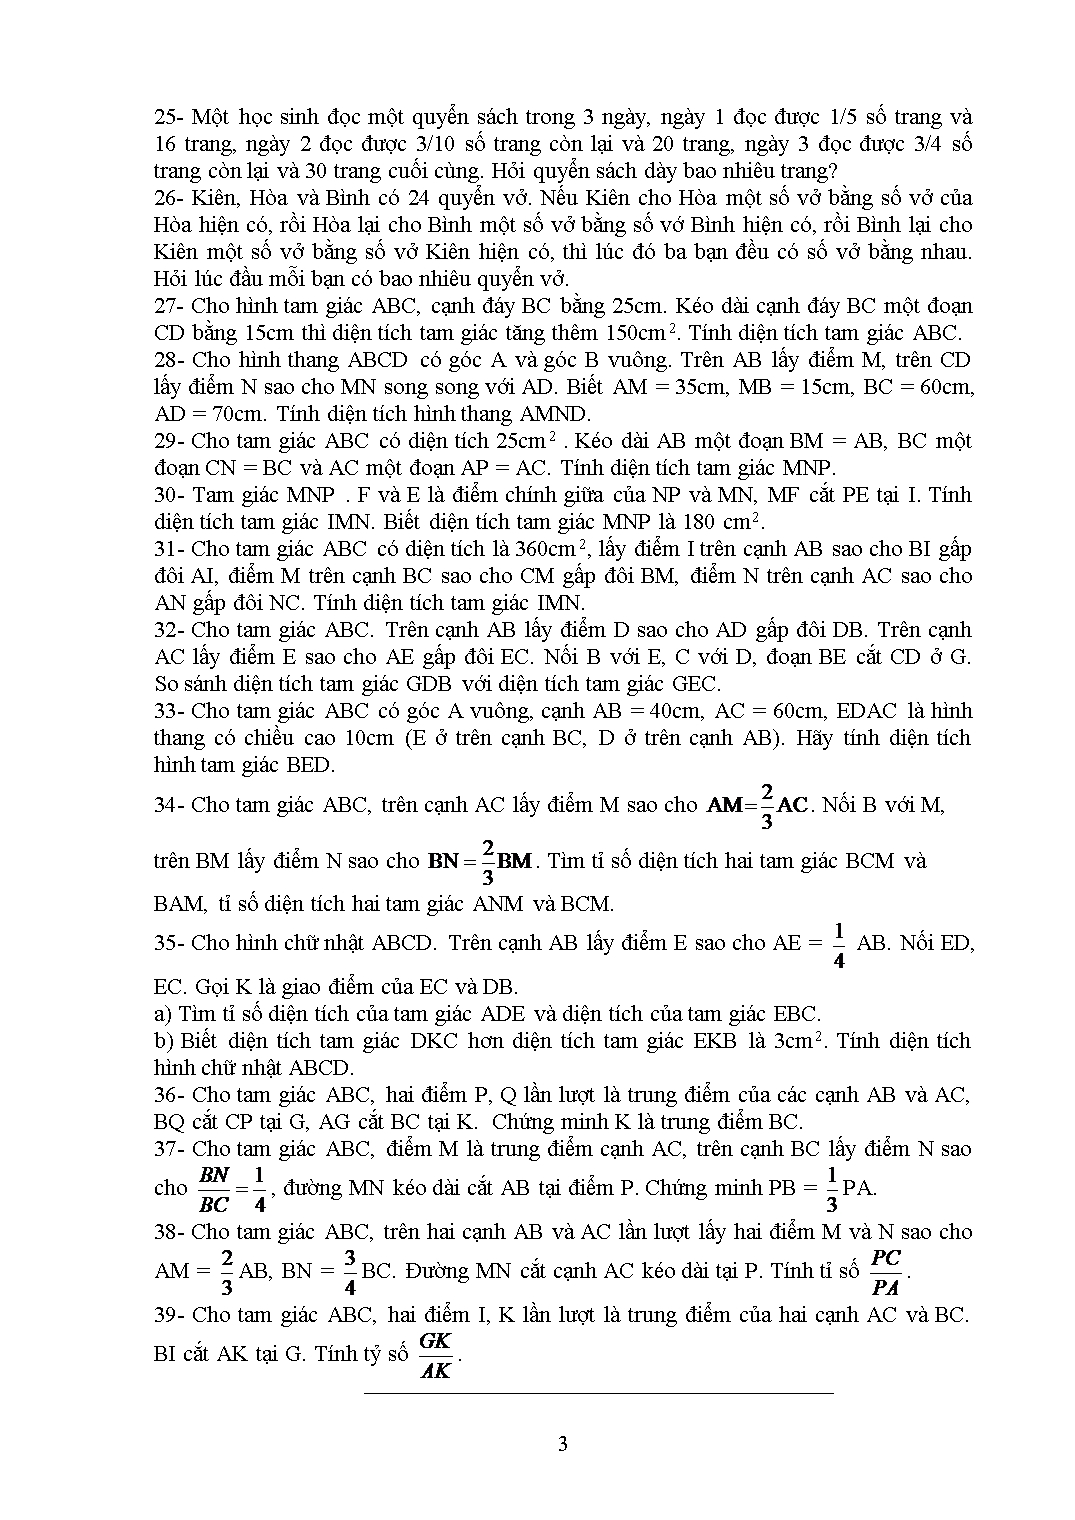 Đề cương ôn tập học phần thực hành giải toán ở Tiểu học (Phần 1) trang 3